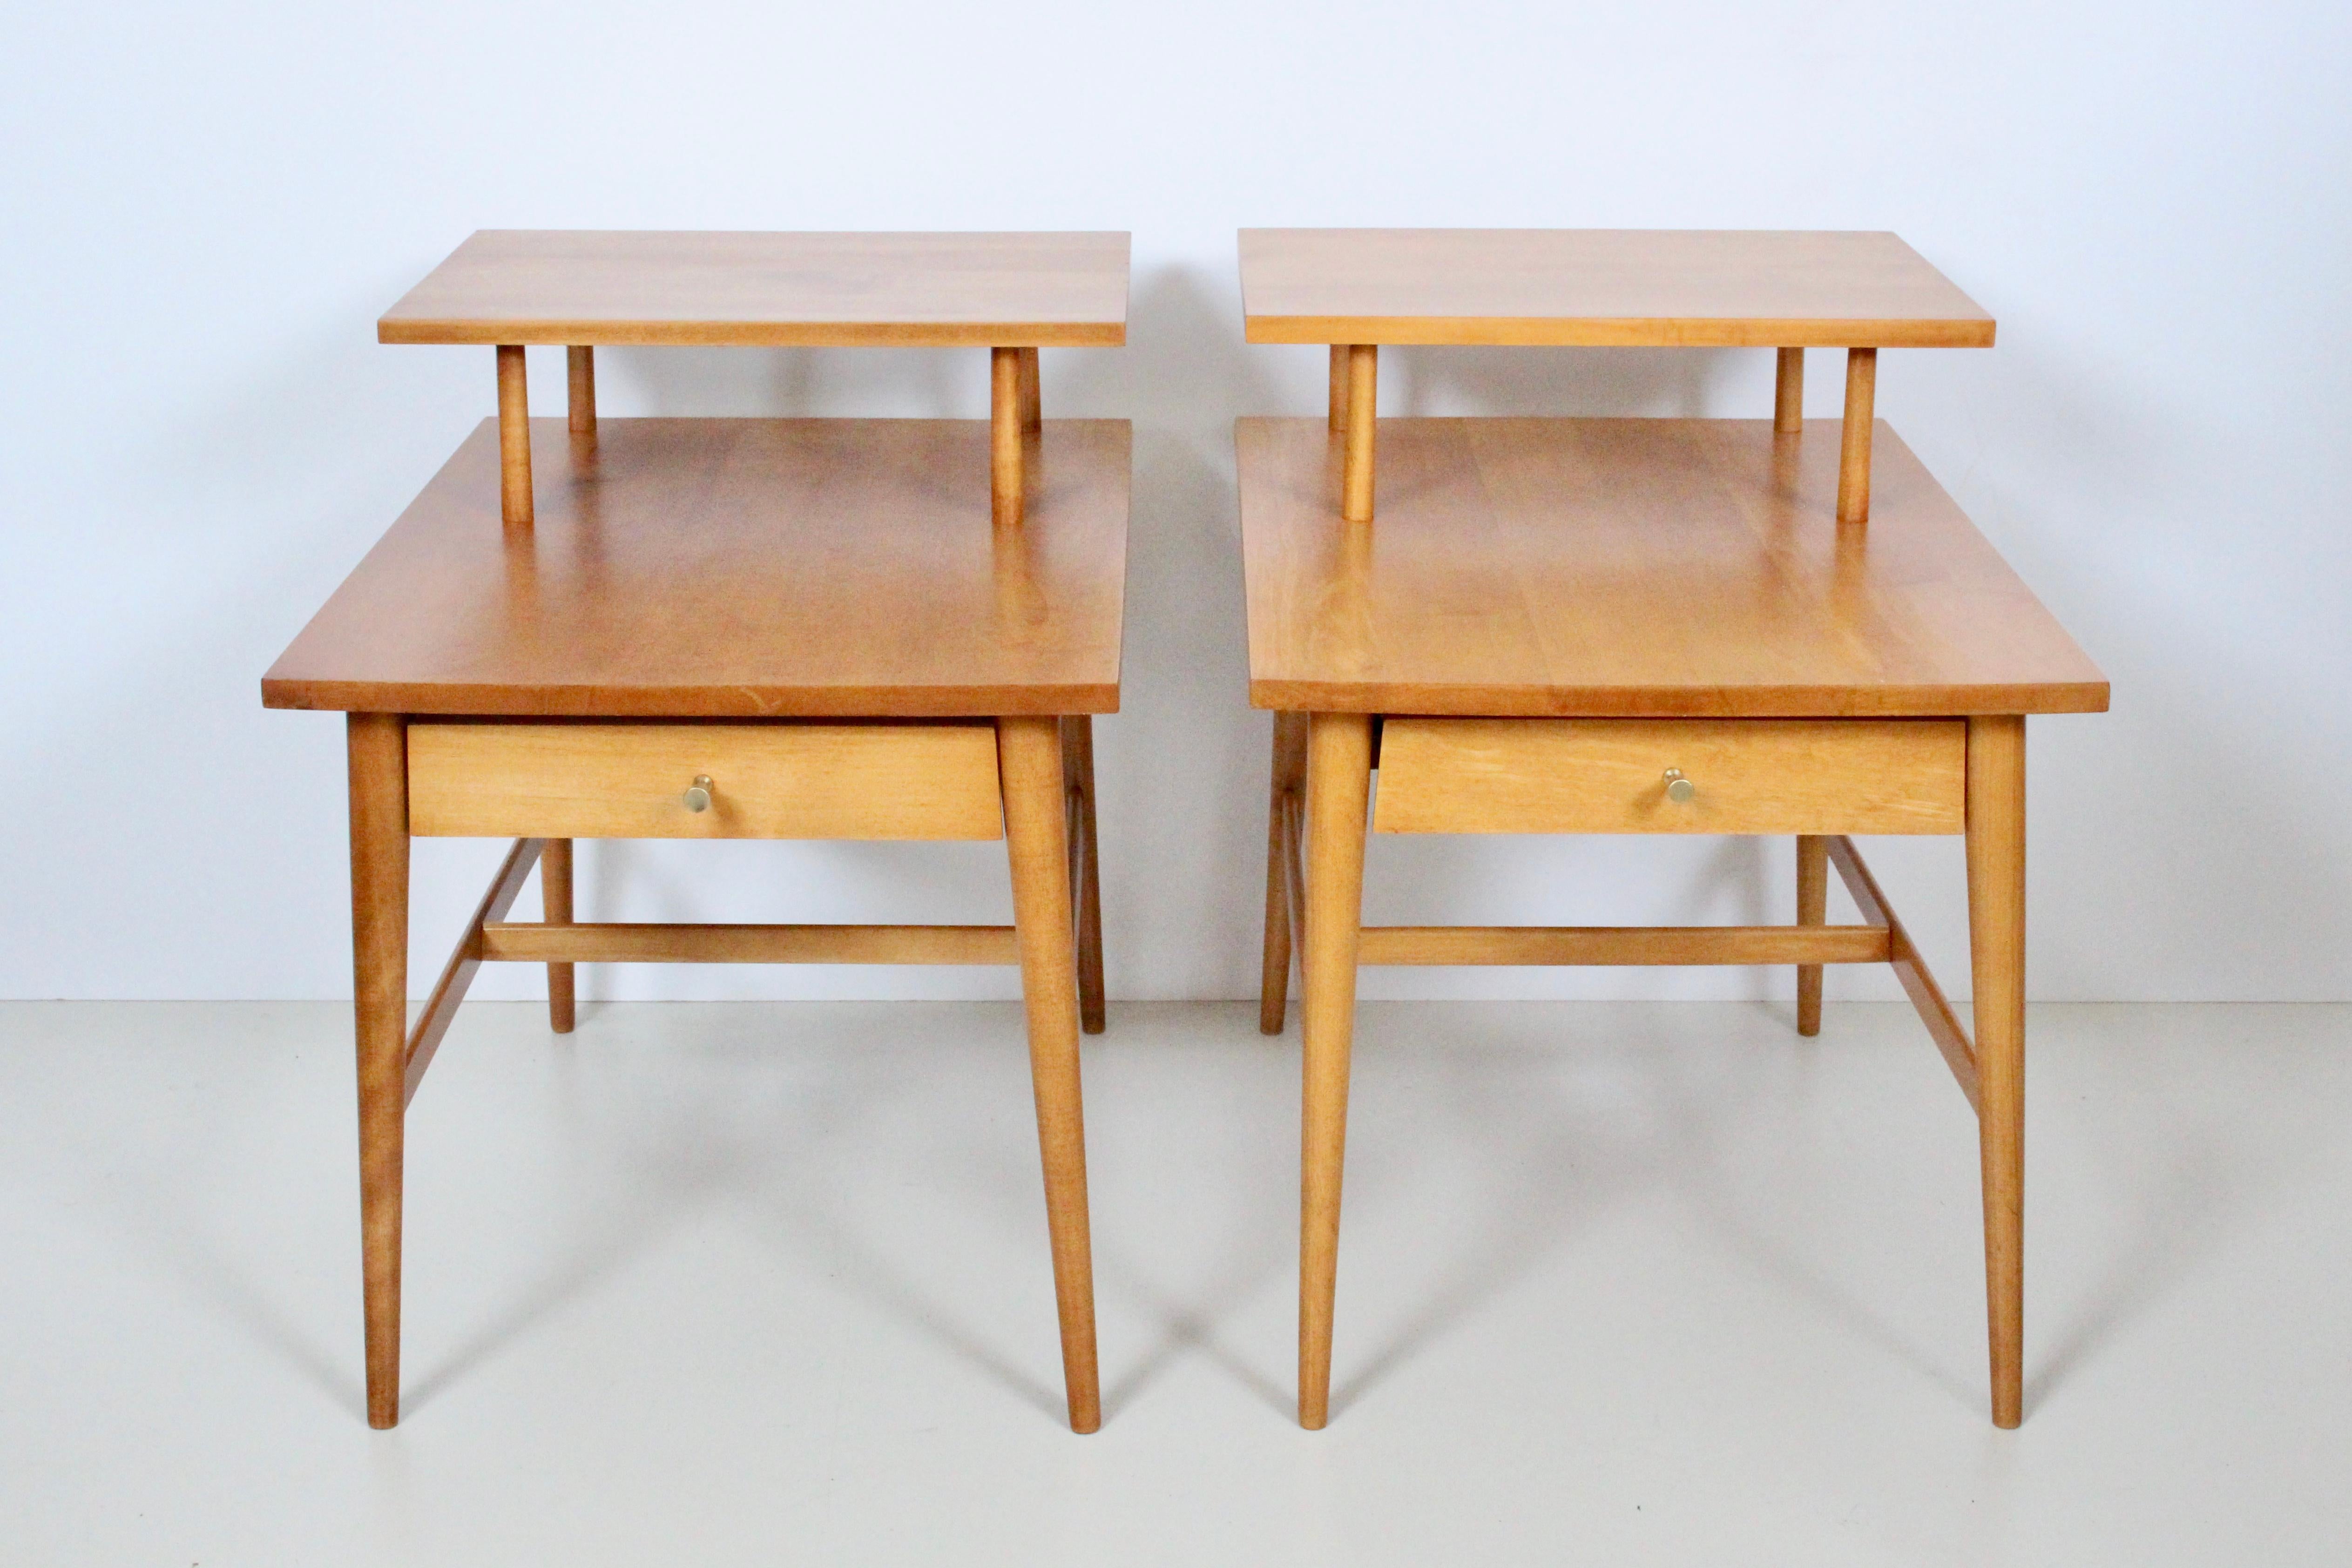 Paar Paul McCobb für Planner Group, Winchendon Furniture #1589 Step Tables, 1950er-1960er Jahre. Endtische. Beistelltische. Nachttische. Massive rechteckige Form mit zwei Etagen, tiefe Einzelschubladen mit den charakteristischen McCobb